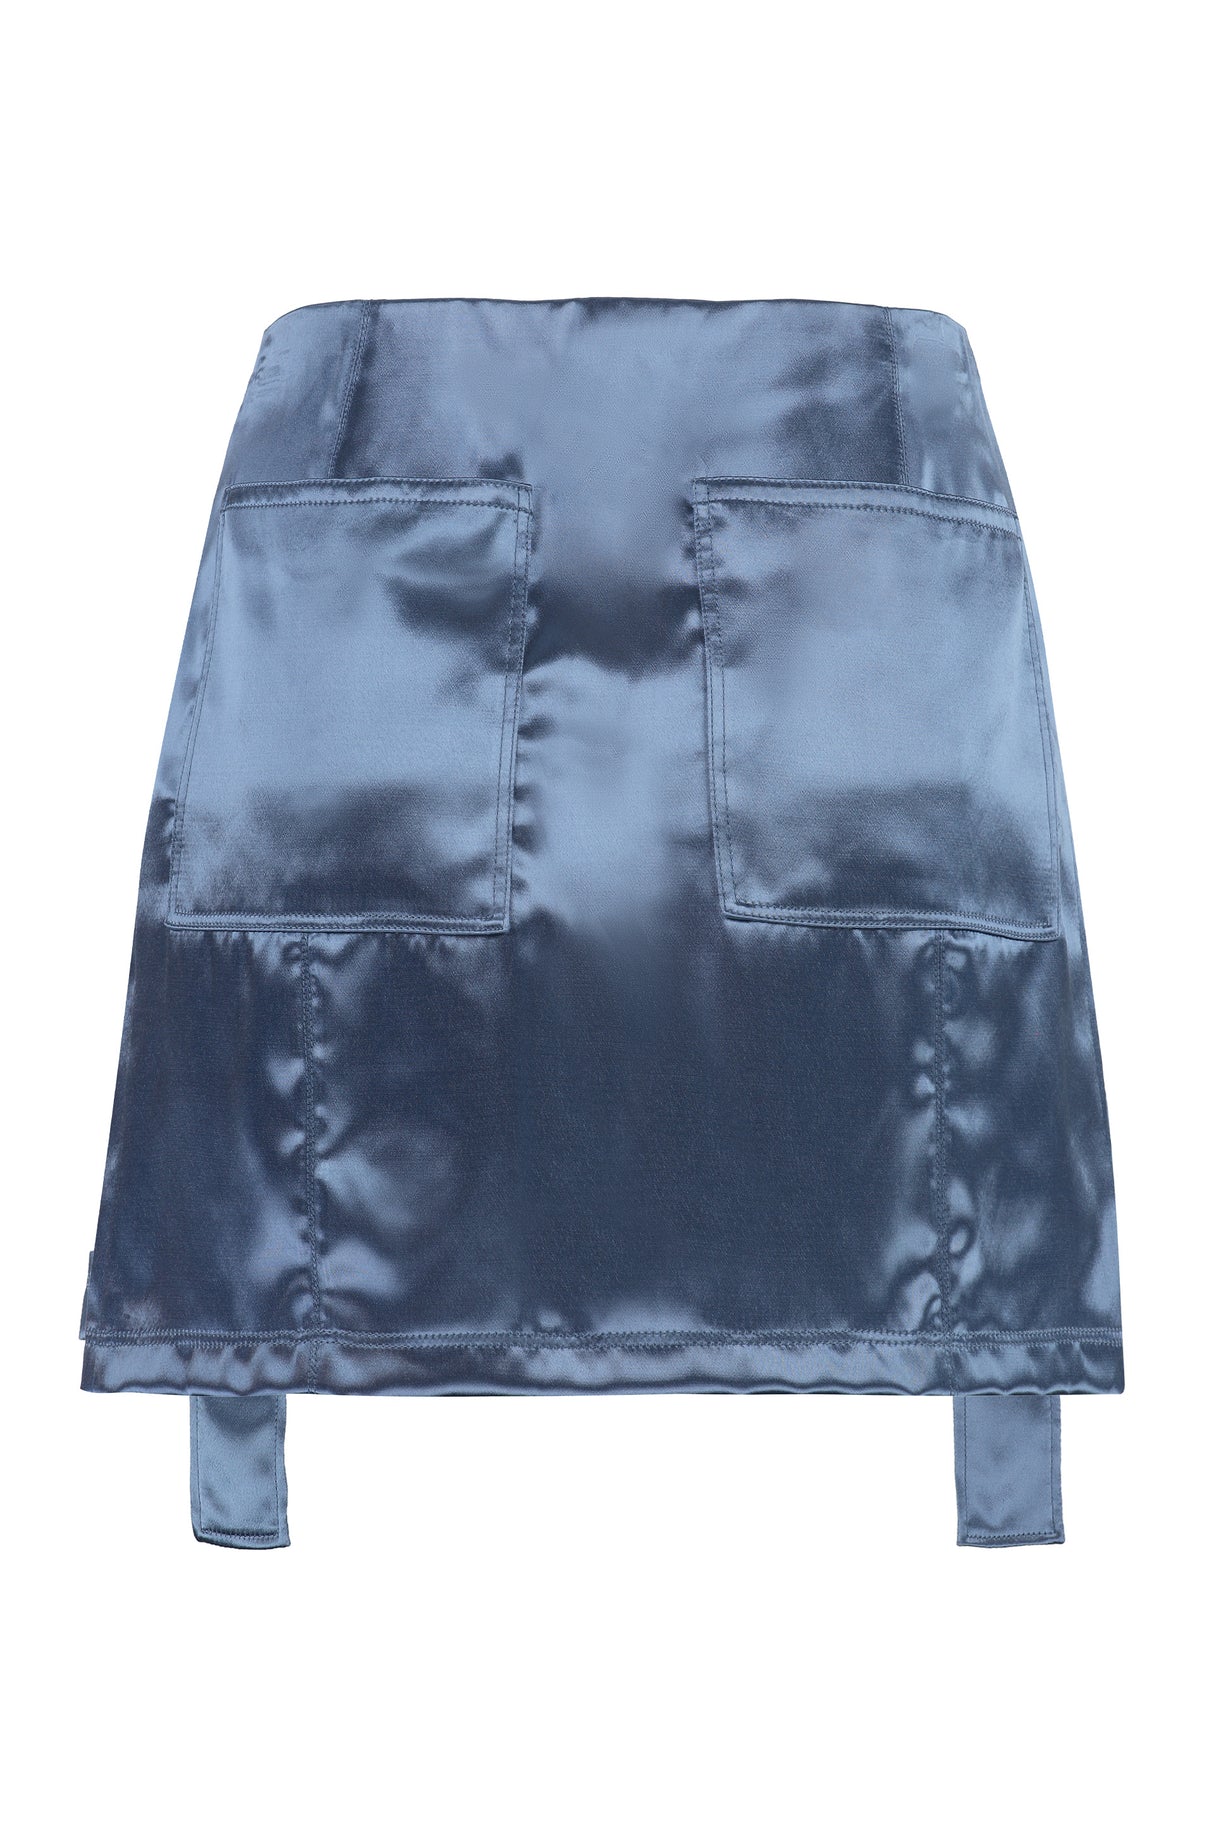 Váy Satin Màu Xanh Nước Biển - Váy ngắn cho phụ nữ với túi hành lý